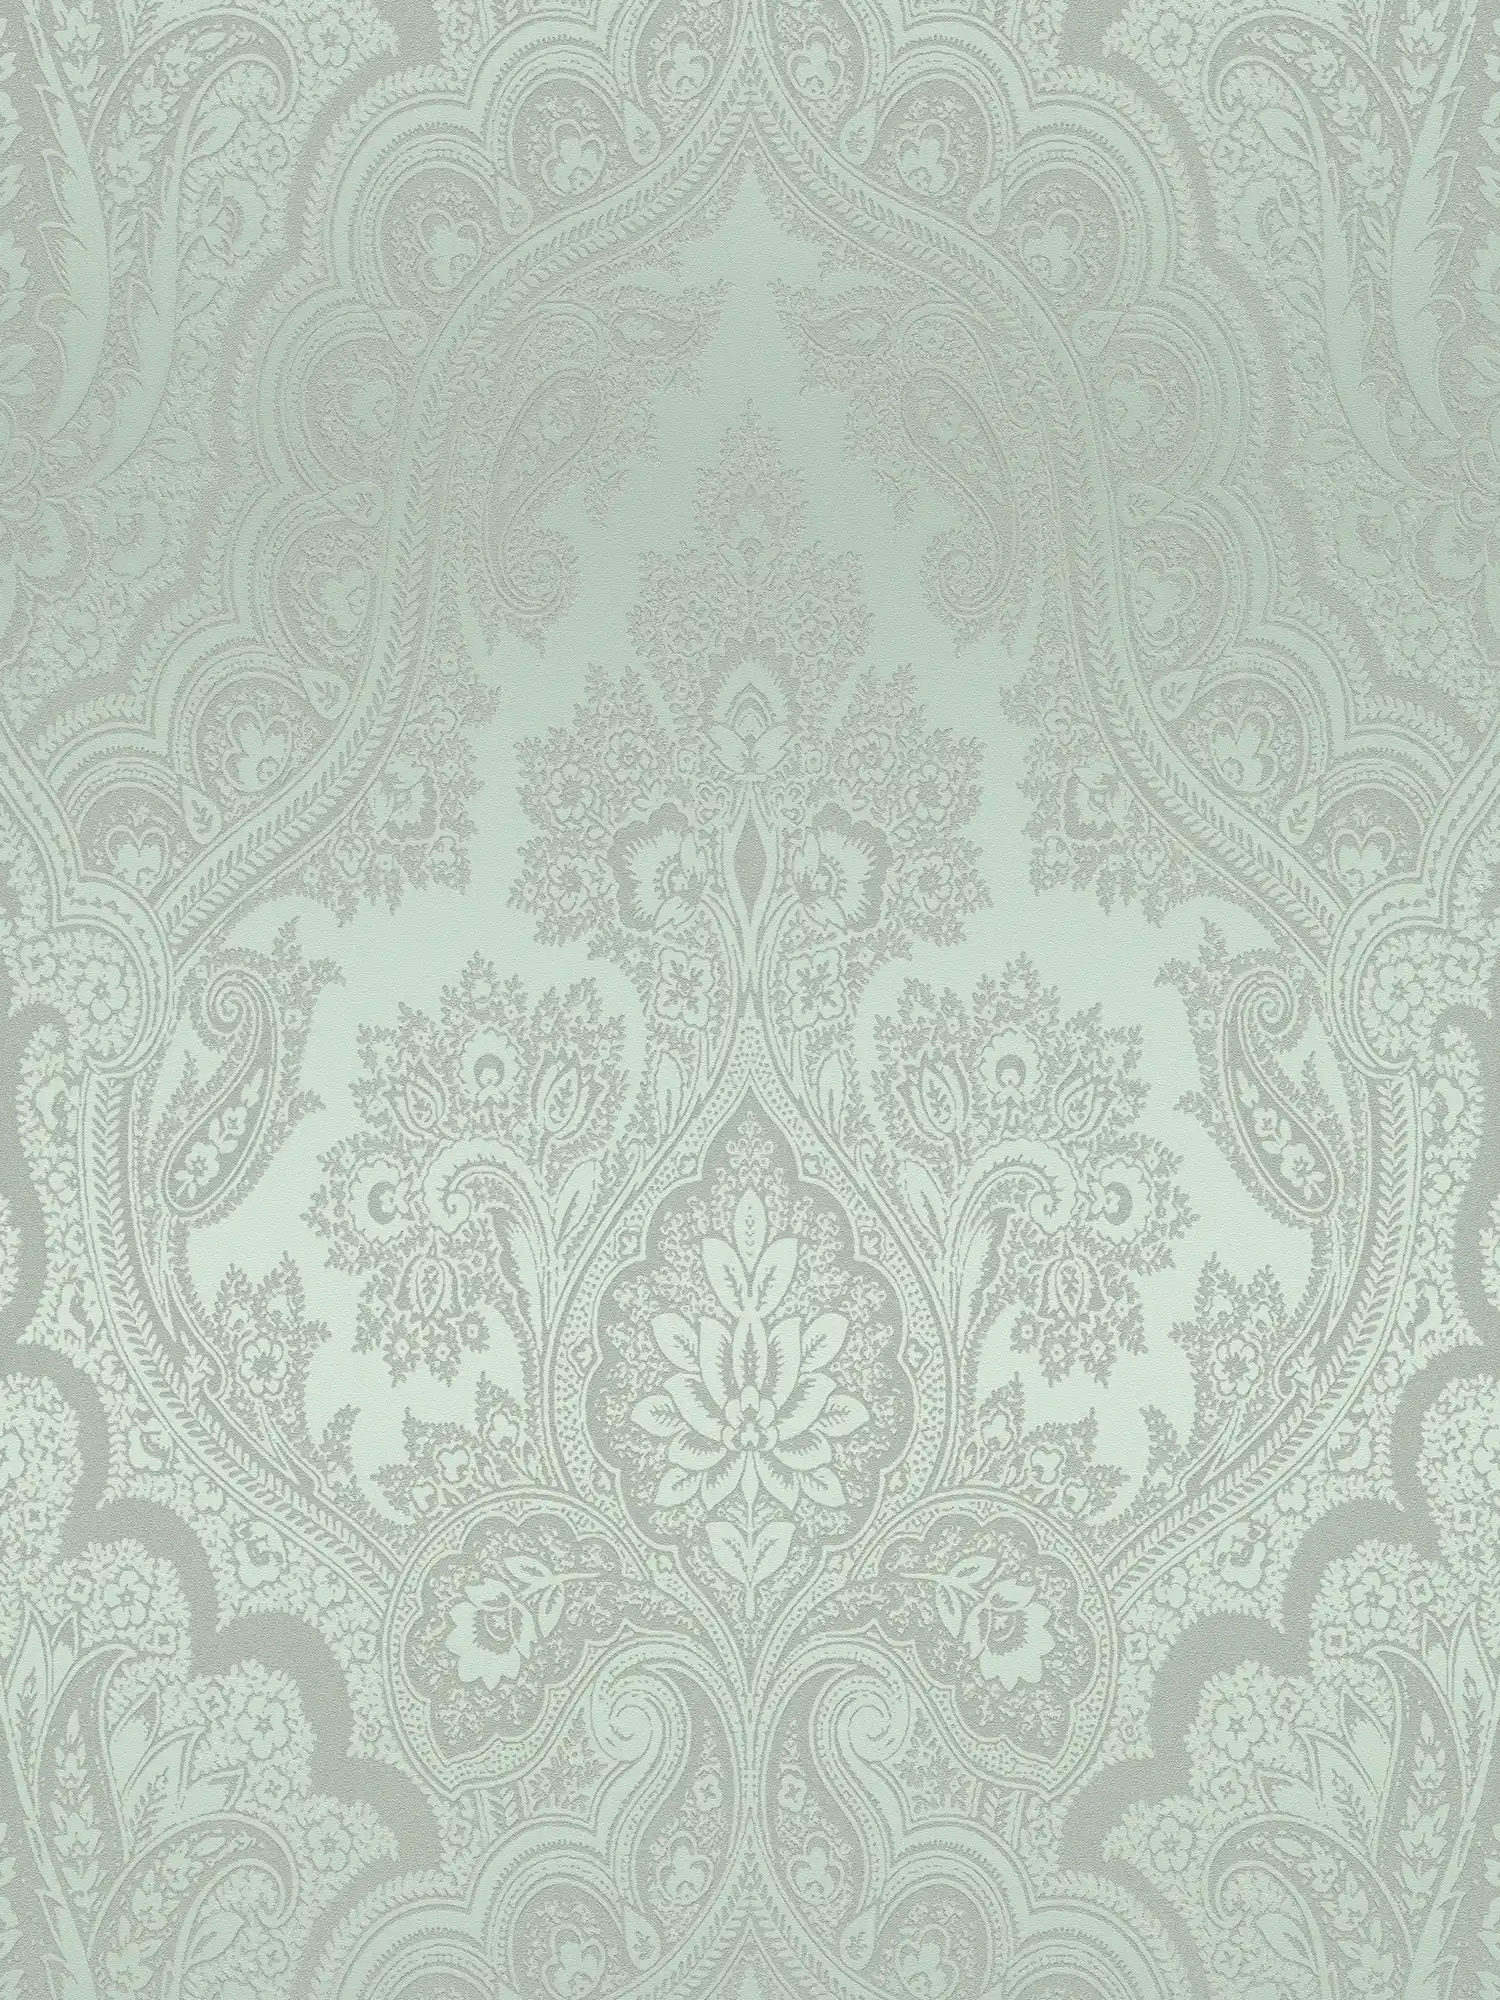 Boho behang mintgroen & zilvergrijs met ornament patroon - metallic, groen
